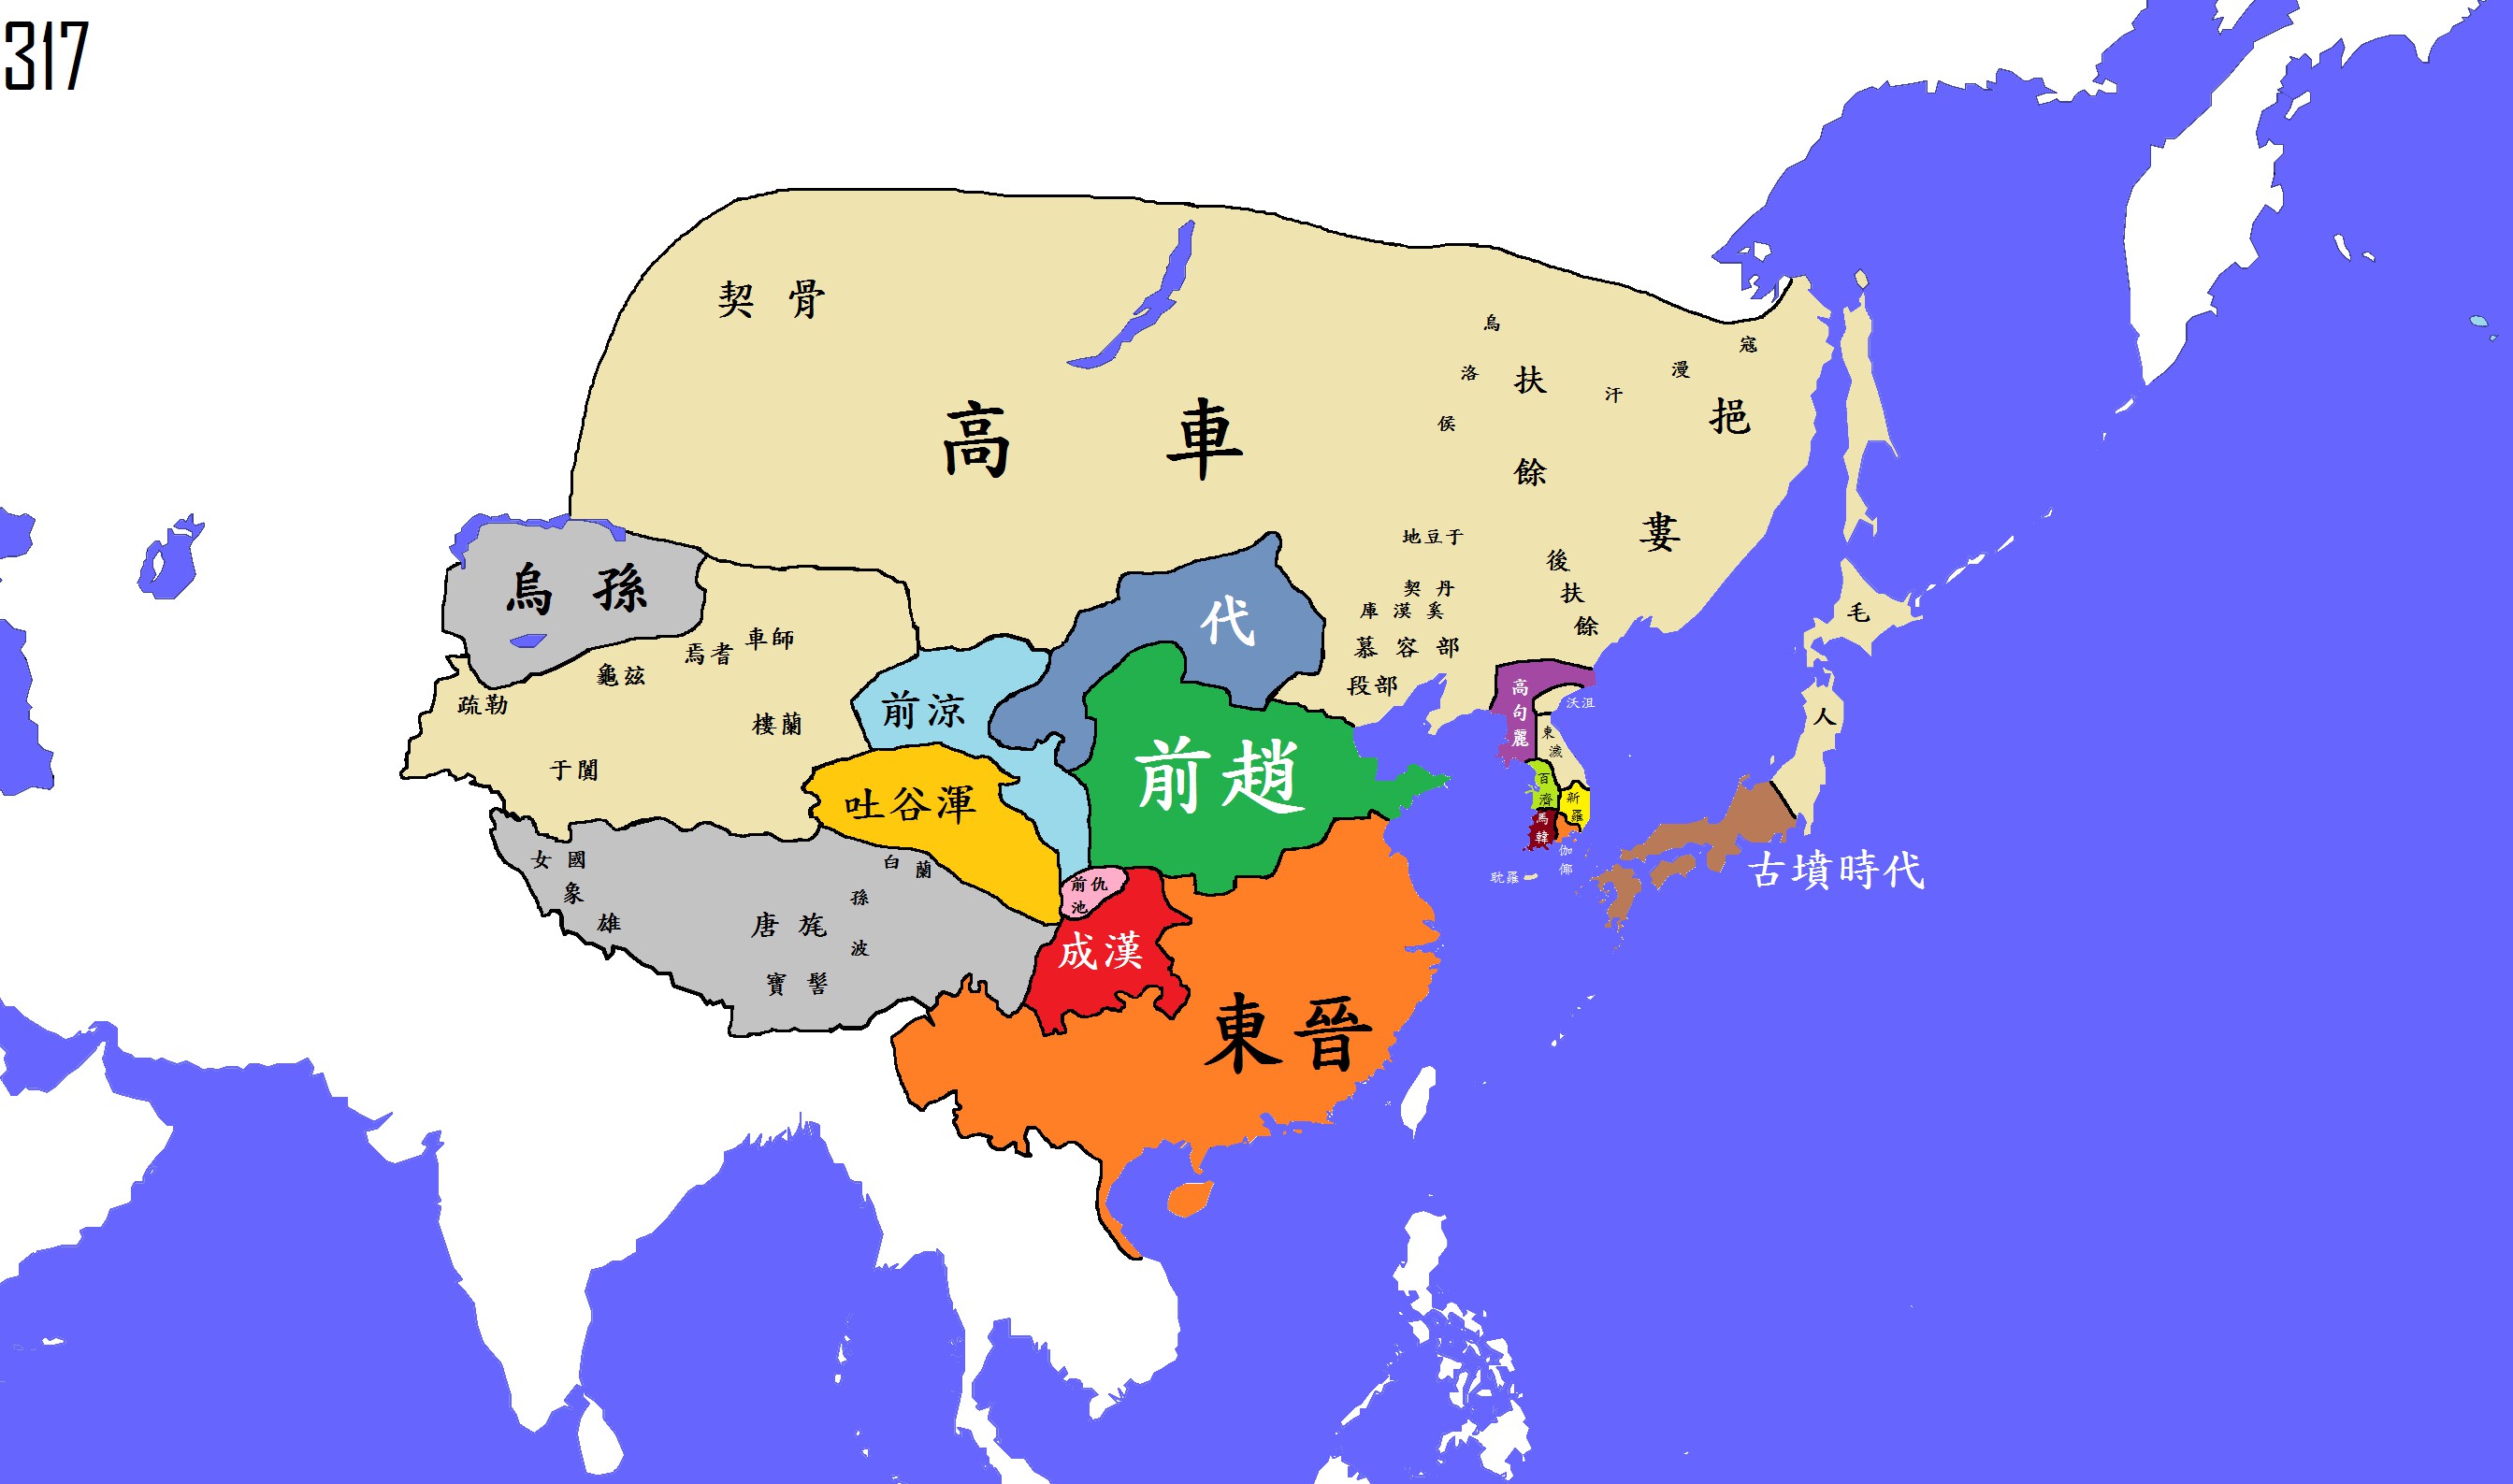 公元317年(东晋)_疆域 地图 查询